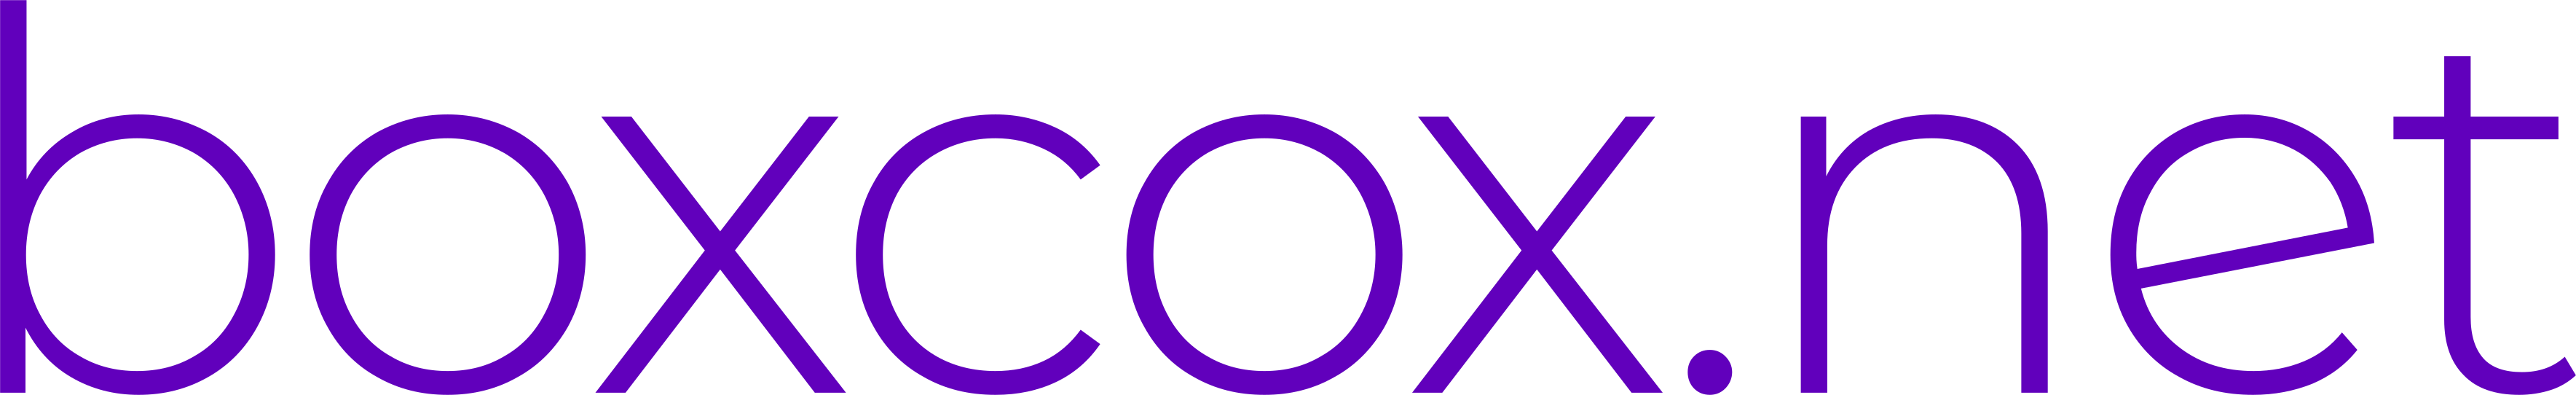 boxcox.net